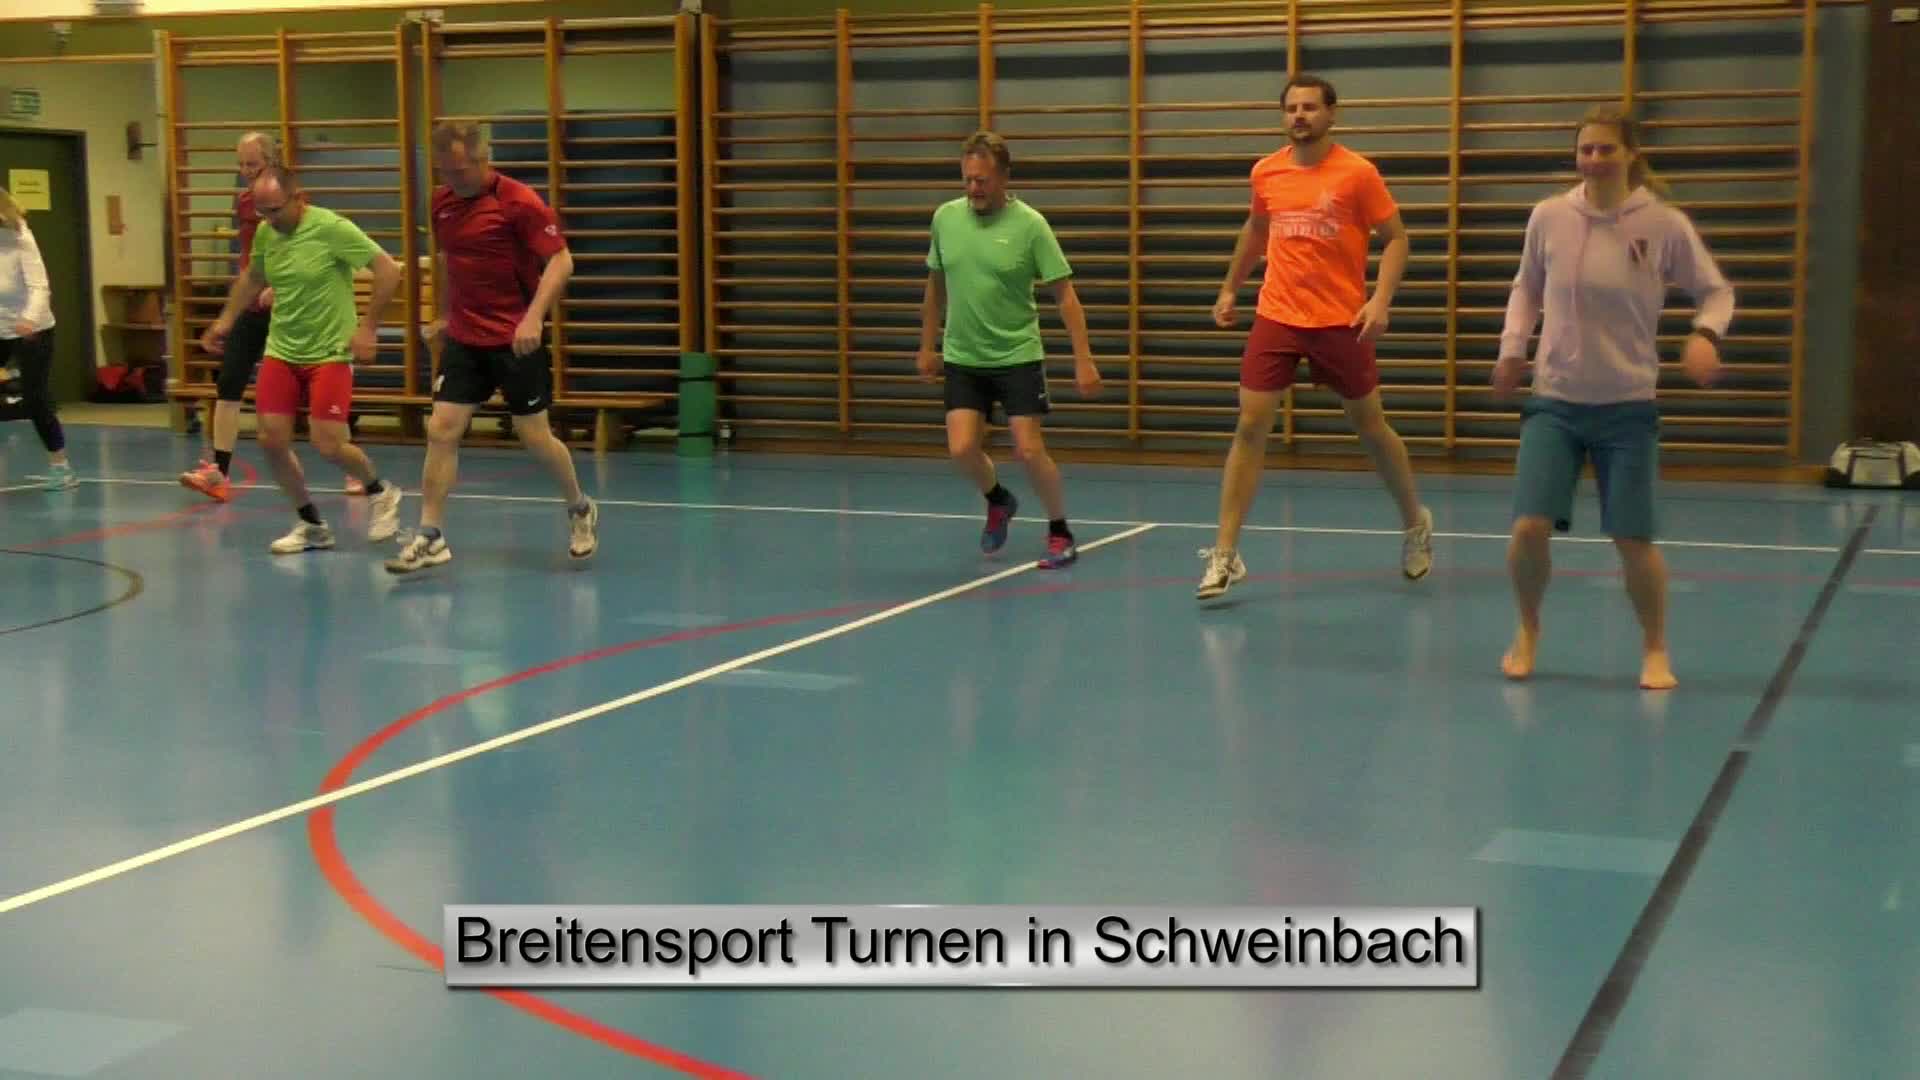 Breitensport Turnen in Schweinbach